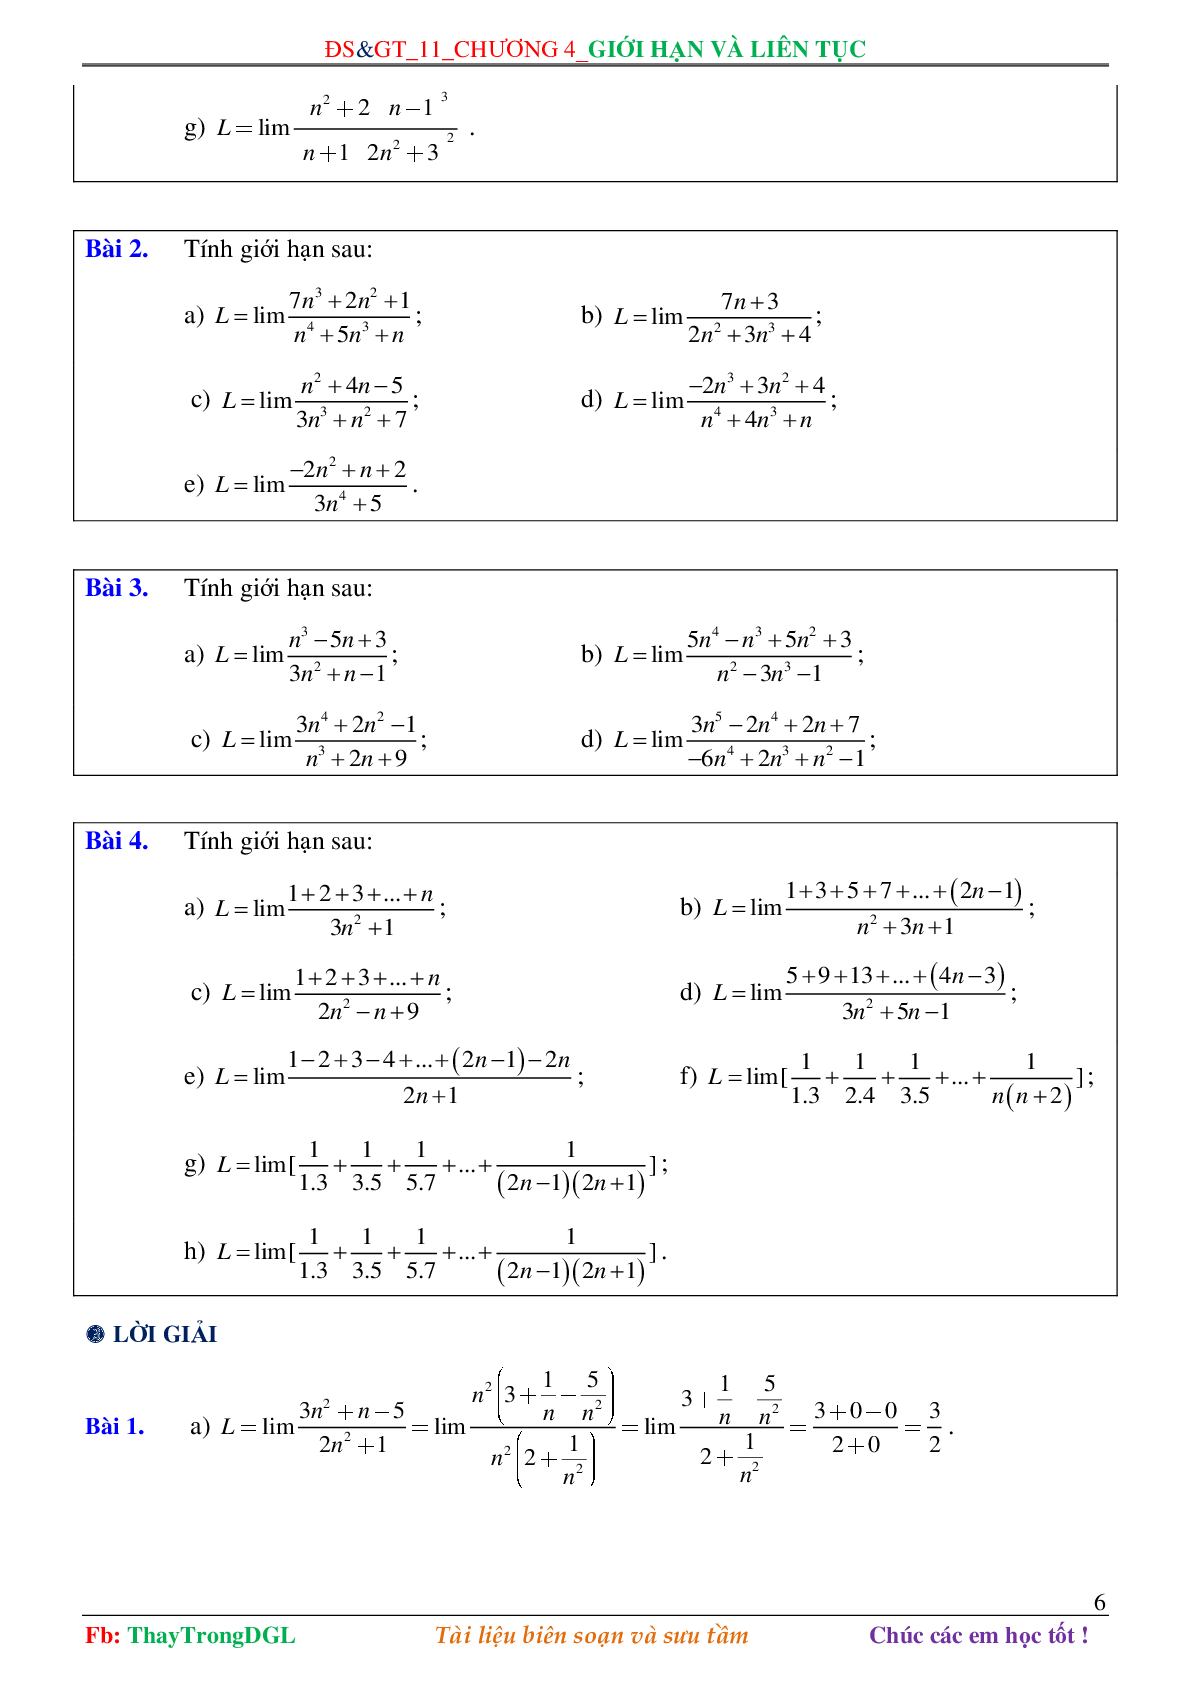 Các dạng toán về Giới hạn và liên tục (có bài tập kèm theo) (trang 6)